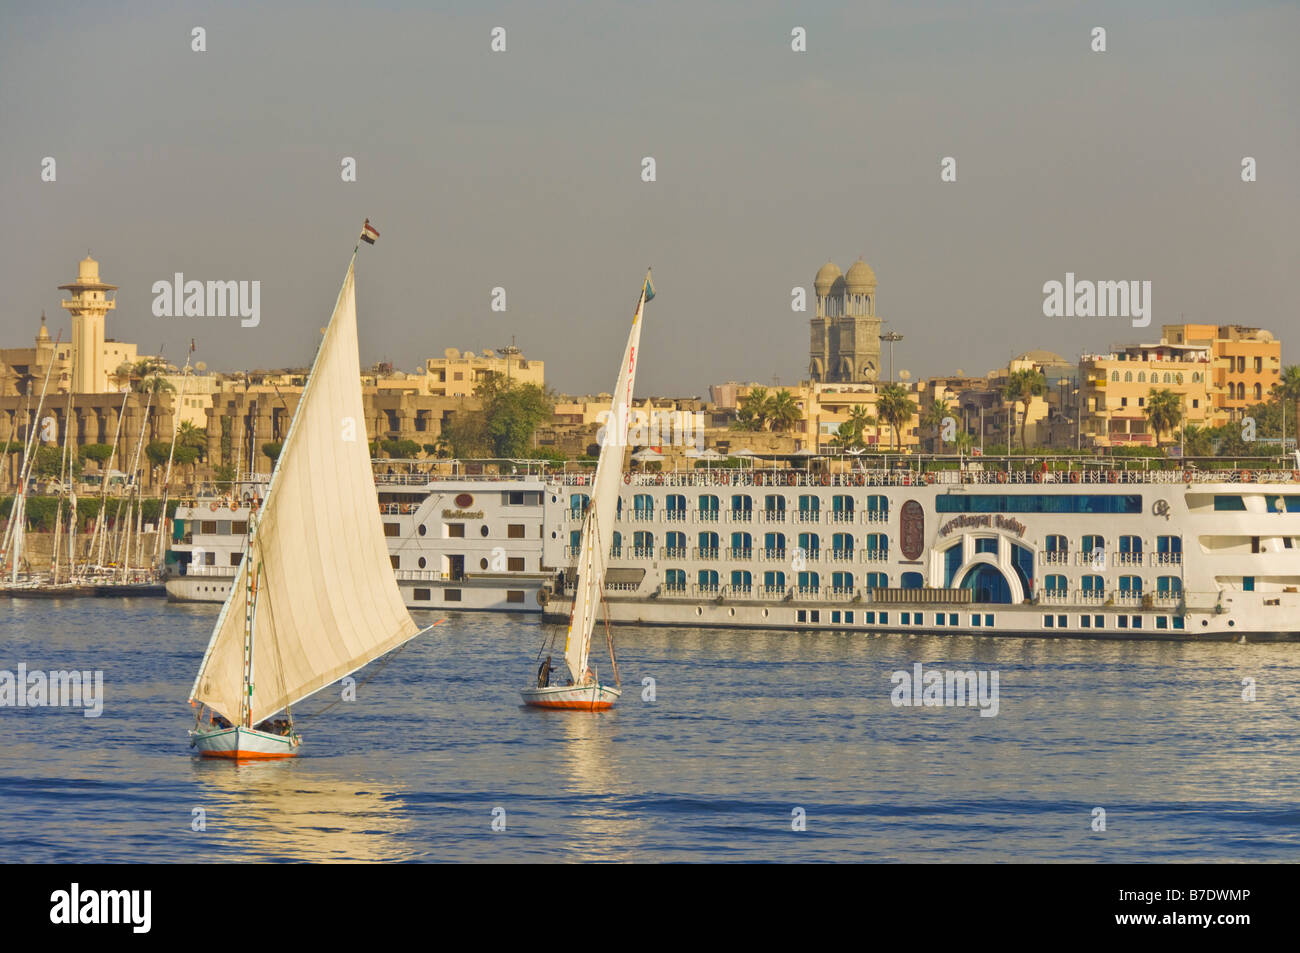 In legno tradizionali barche a vela o feluche navigando sul fiume Nilo con crociera sul Nilo barche ormeggiate a Luxor Egitto Medio Oriente Foto Stock